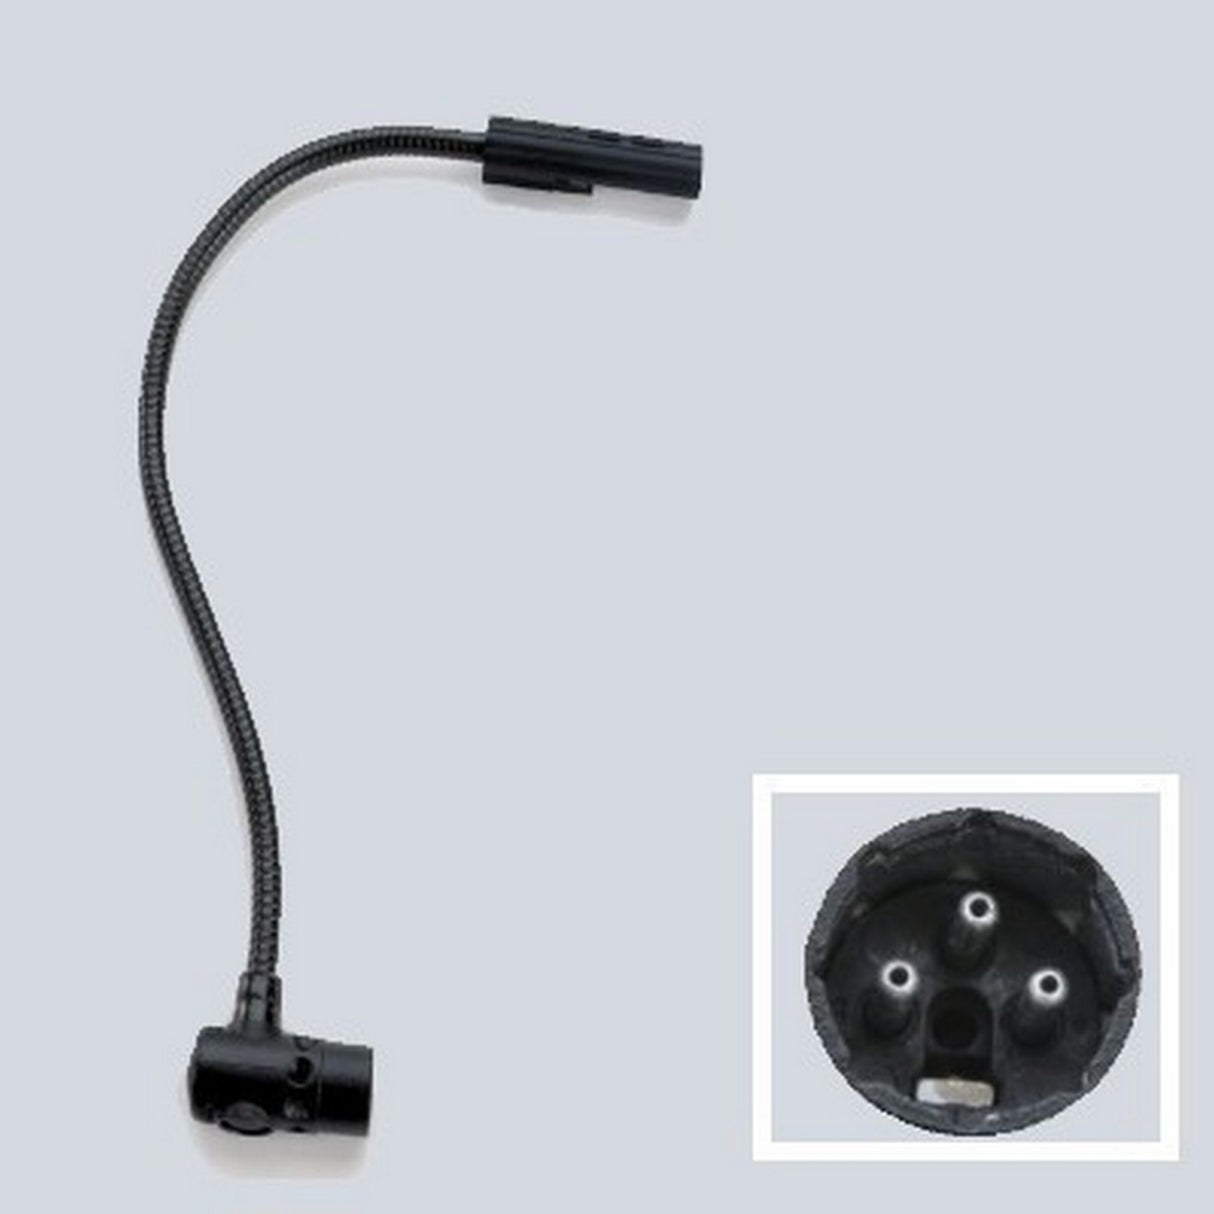 Littlite 24XR-LED 24-Inch Gooseneck Task LED Light, 3-Pin Right-Angle XLR Connector